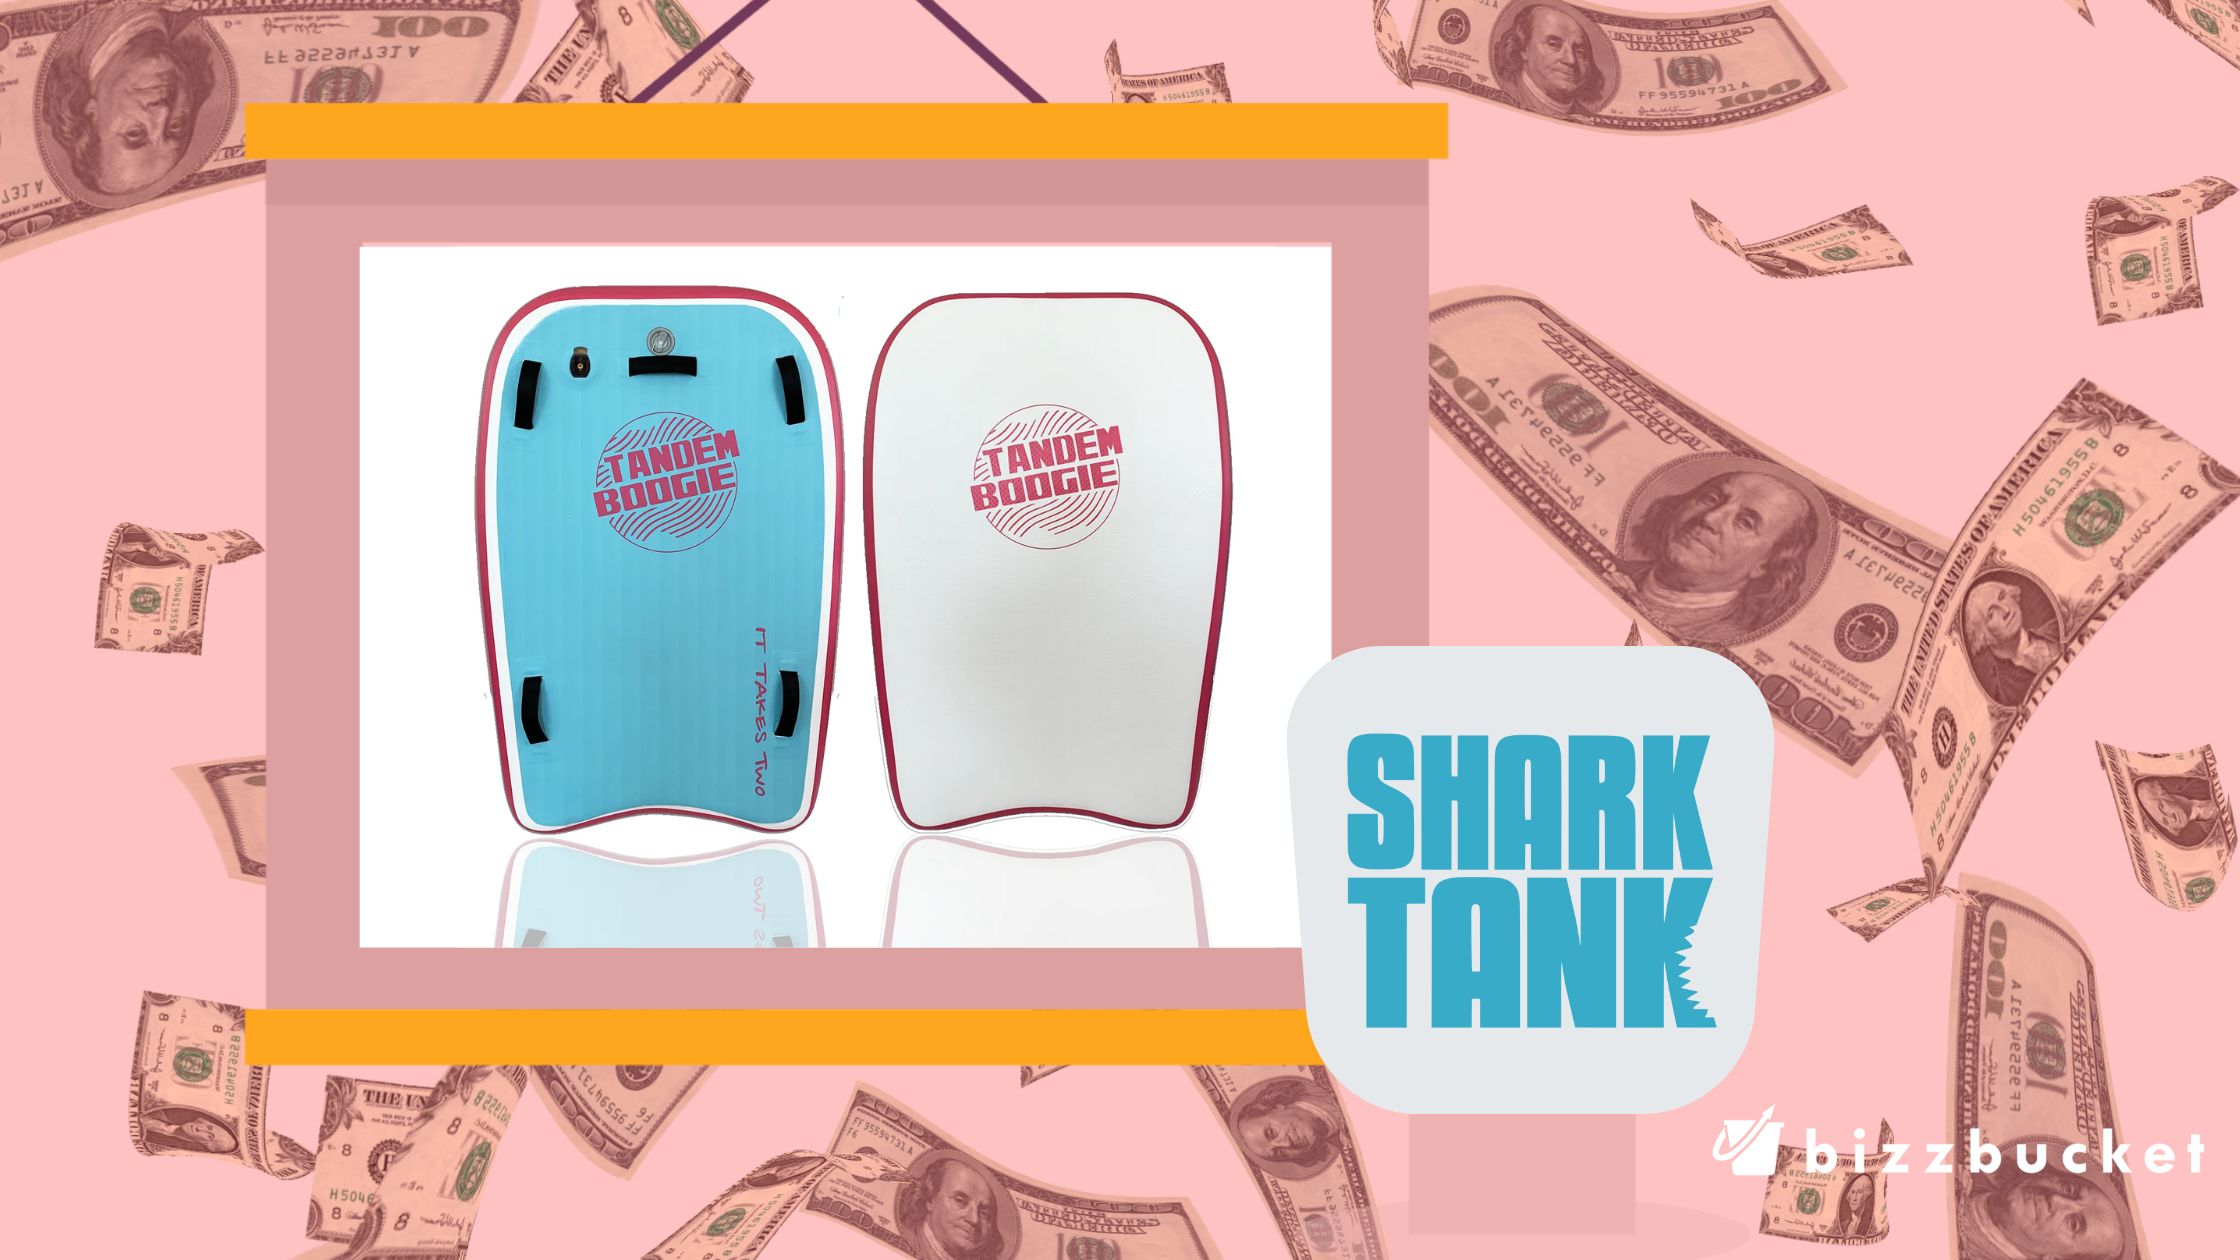 tandem boogie shark tank update